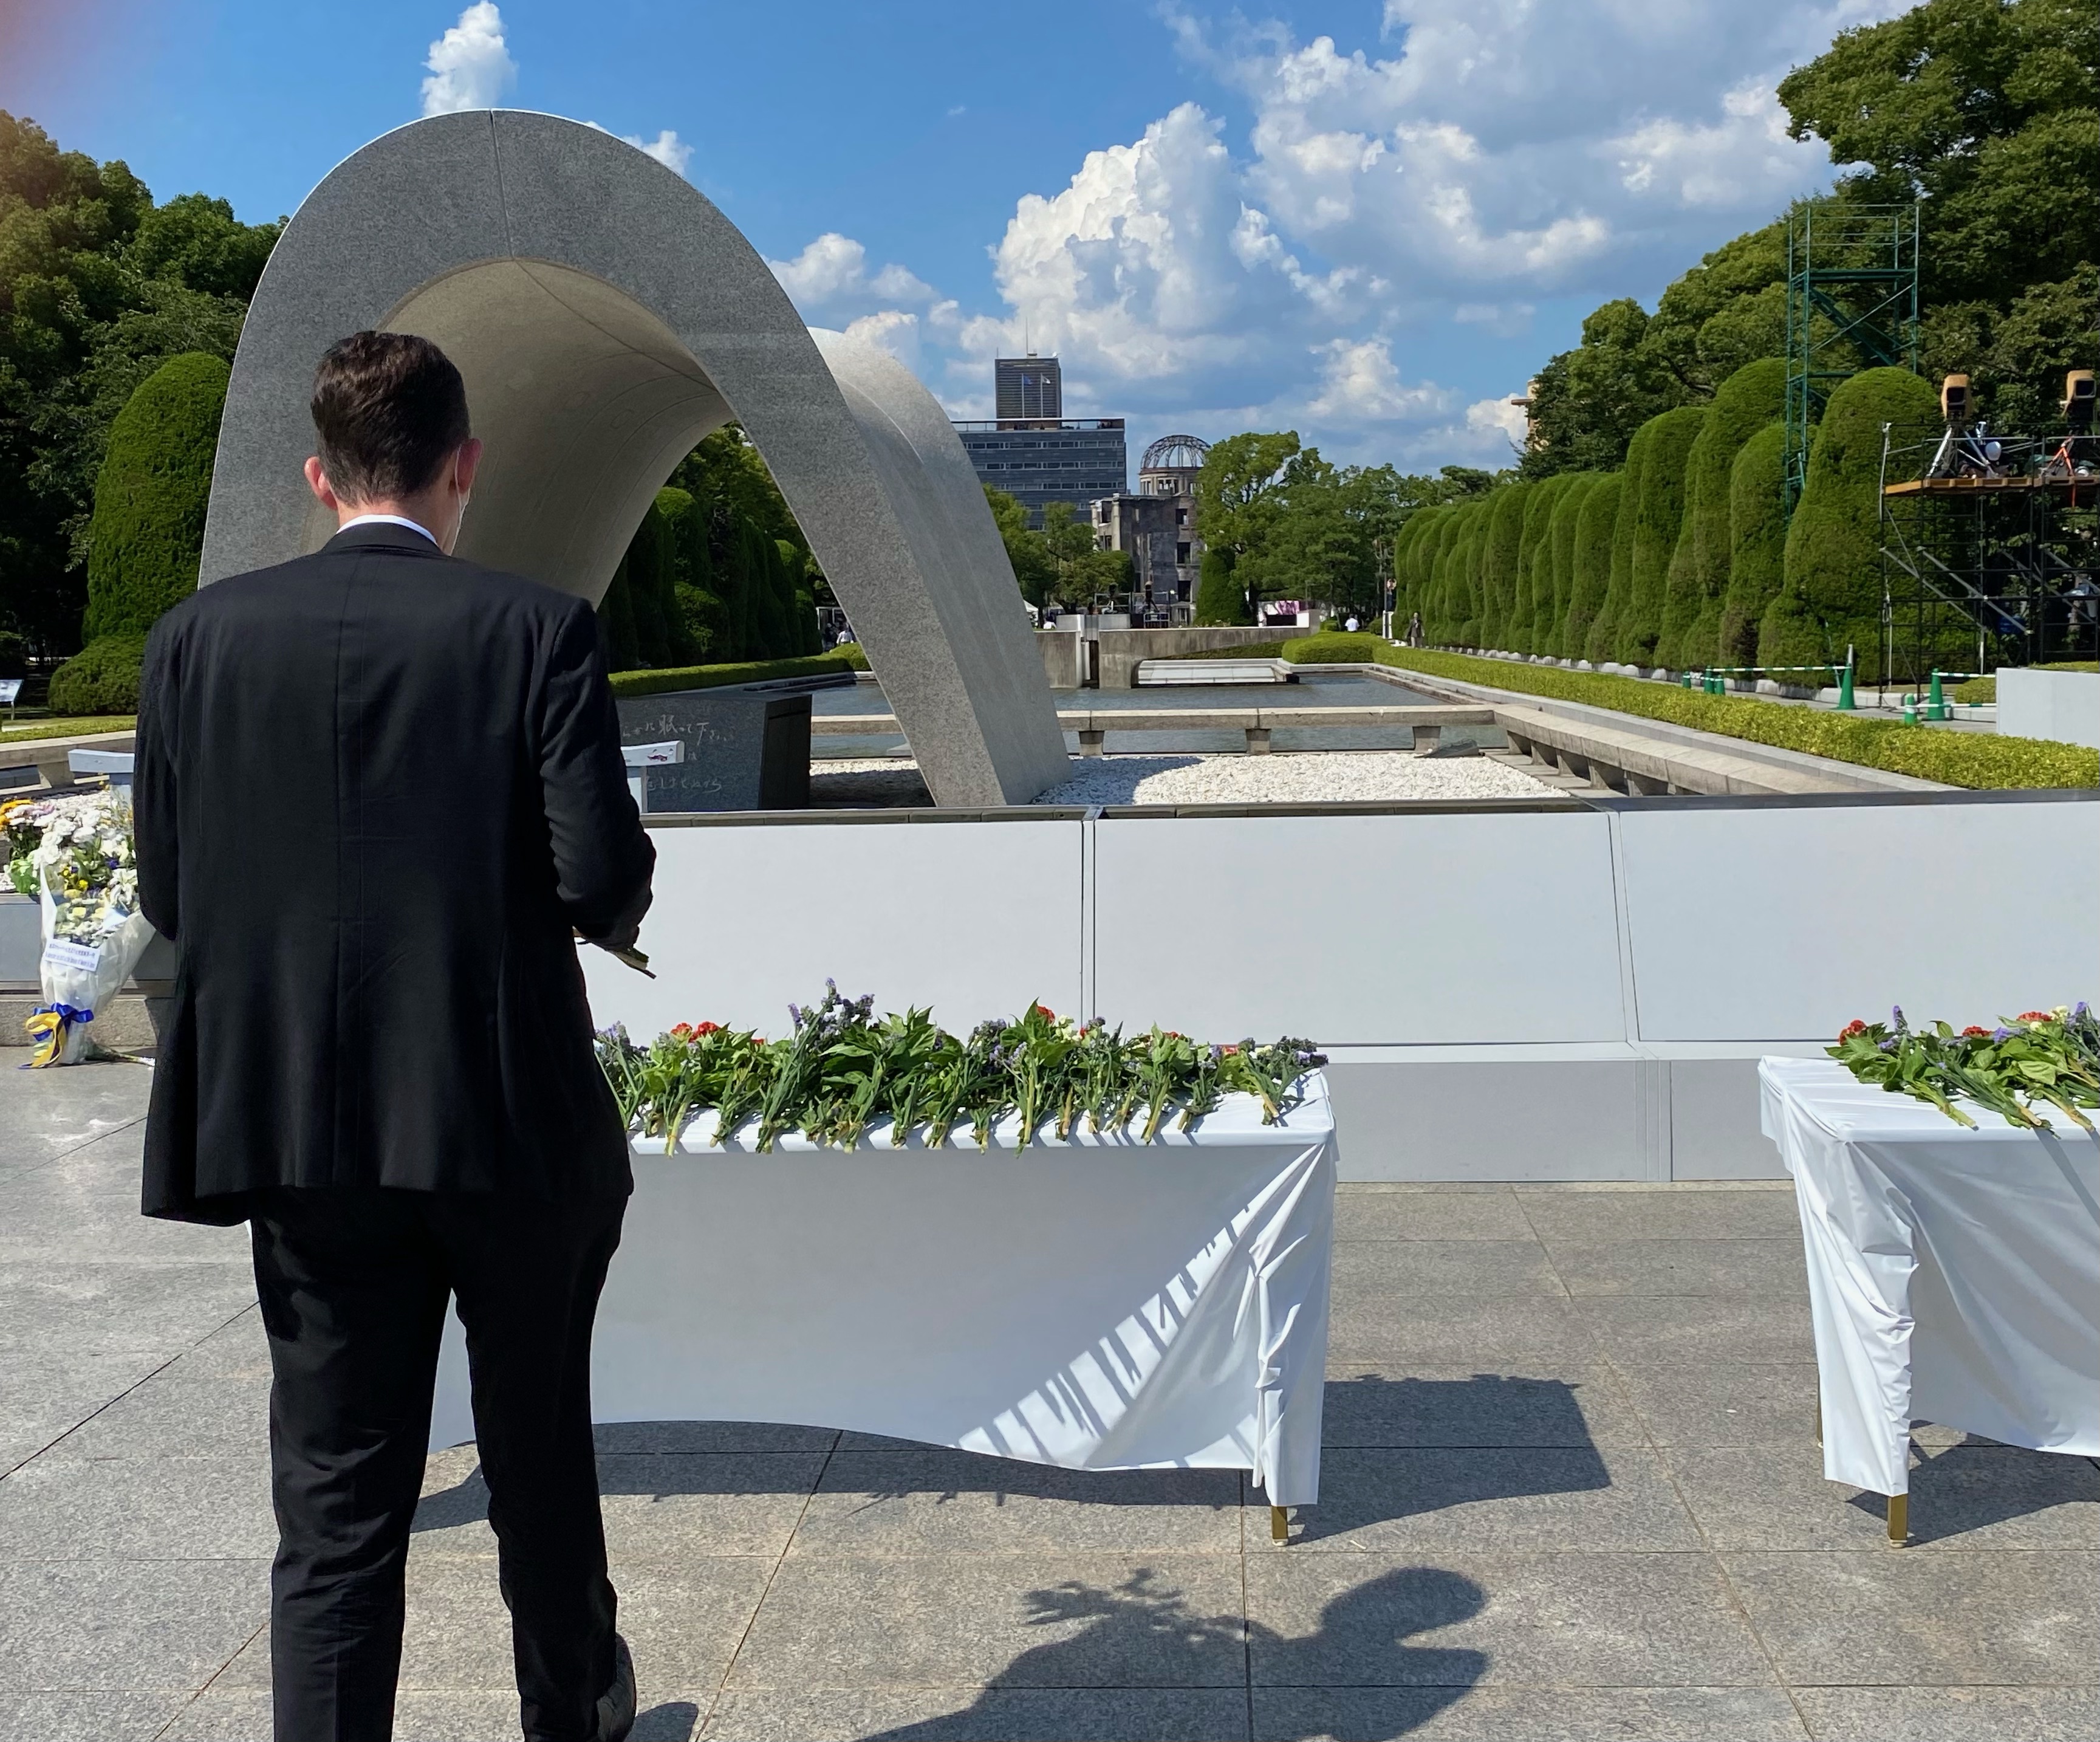 オーストラリア大使館 Australia In Japan Today Consul General Of Australia In Osaka Trevor Holloway Attended The 76th Anniversary Peace Memorial Ceremony In Hiroshima Australia Remains Committed To The Goal Of A Peaceful